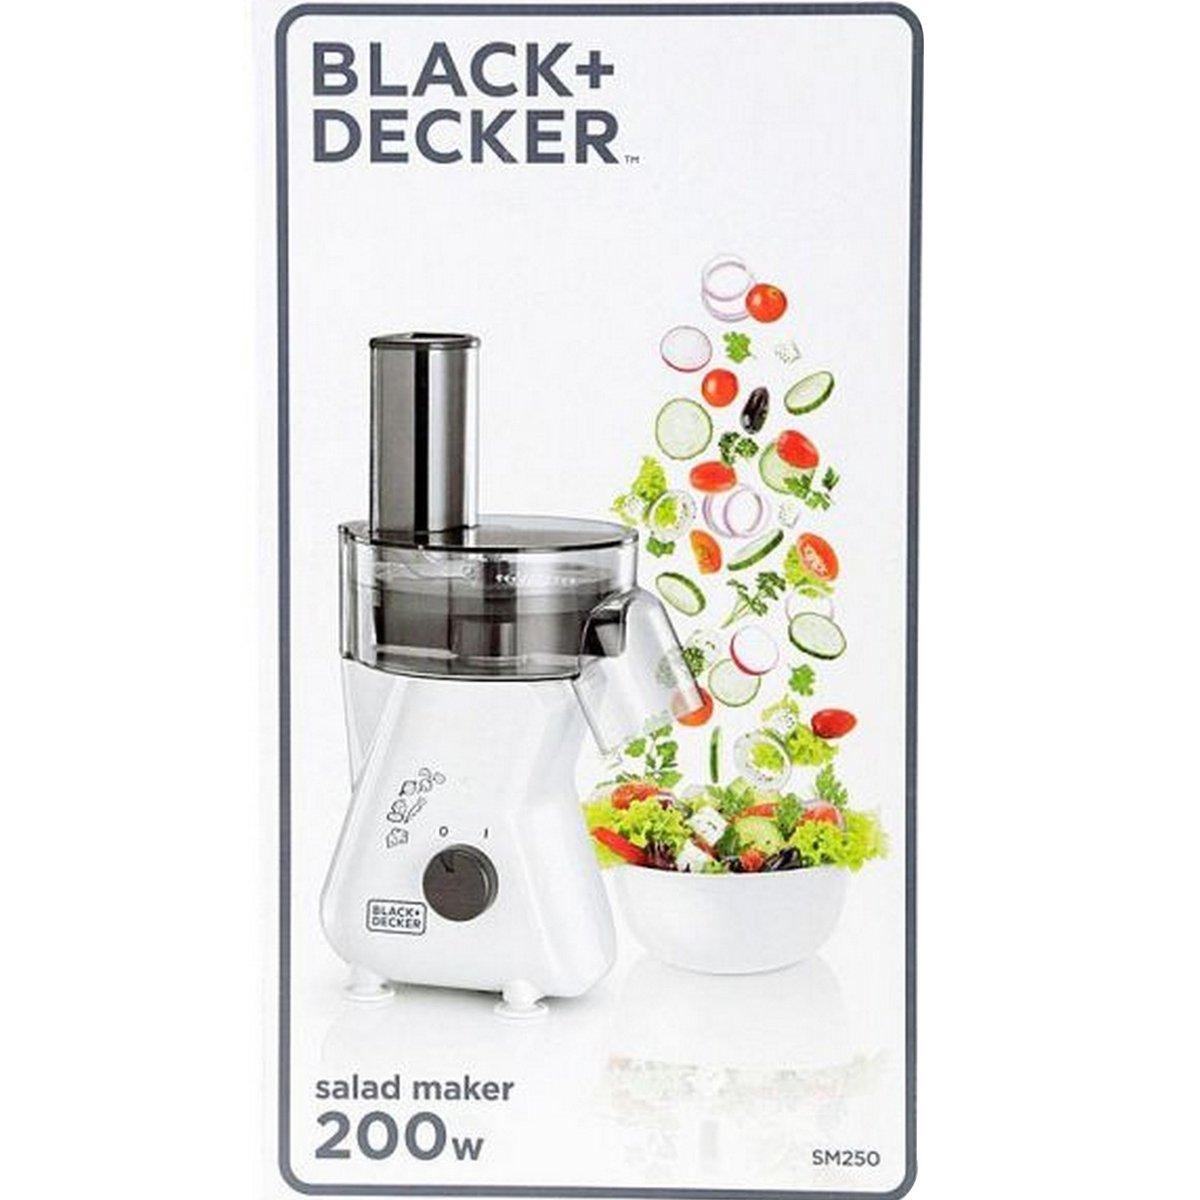 Black + Decker Salad Maker SM250-B5 200W